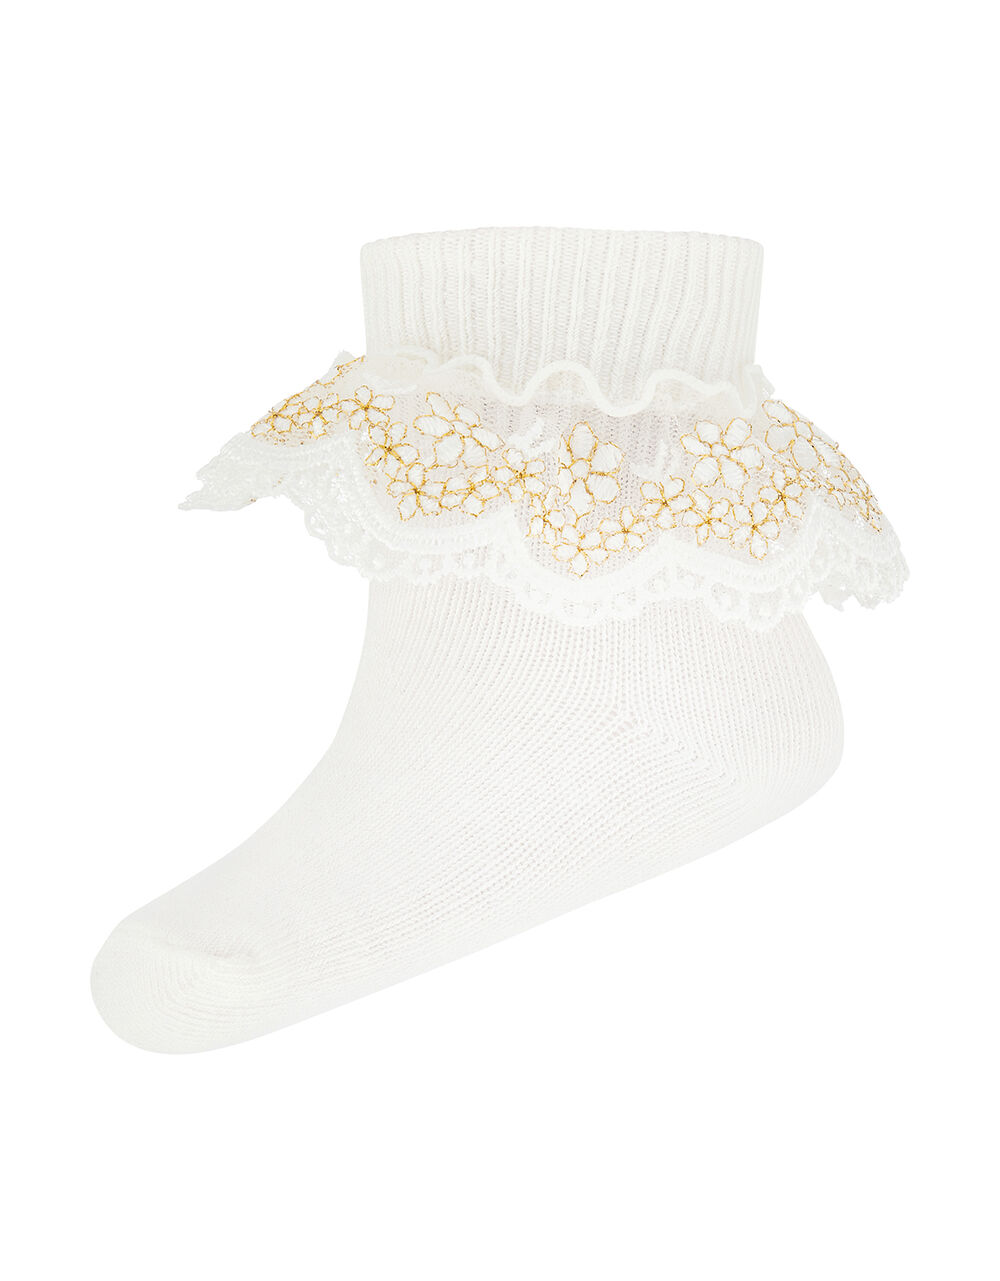 Baby Chloe Sparkle Gold Lace Sock, Ivory (IVORY), large